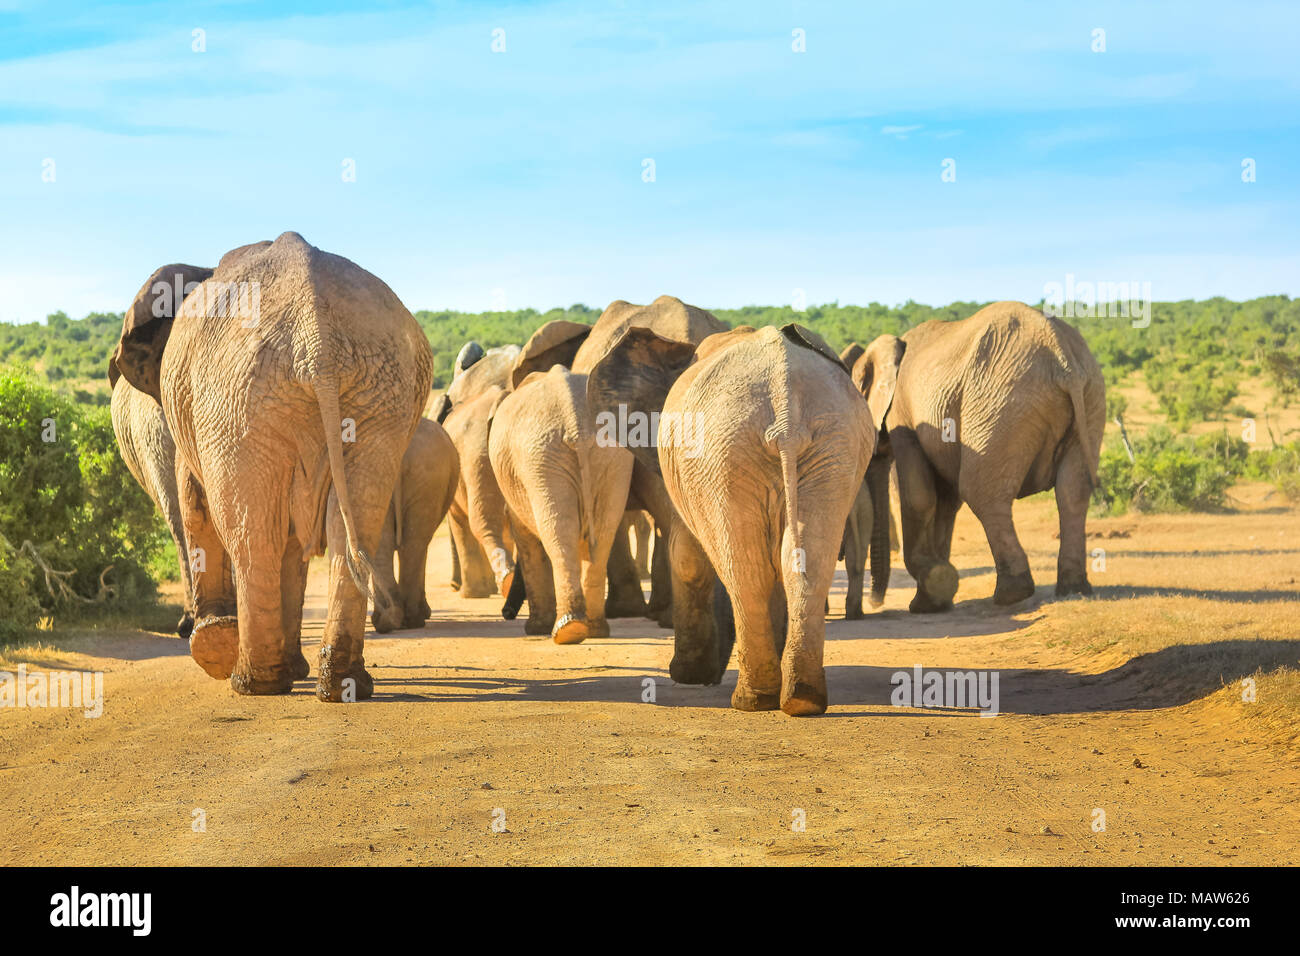 Hinter der Afrikanischen Elefanten zu Fuß auf einem Feldweg in der Mitte des Addo Elephant National Park, Eastern Cape, in der Nähe von Port Elizabeth in Südafrika gesehen. Sommer Saison. Sonnigen Tag. Stockfoto